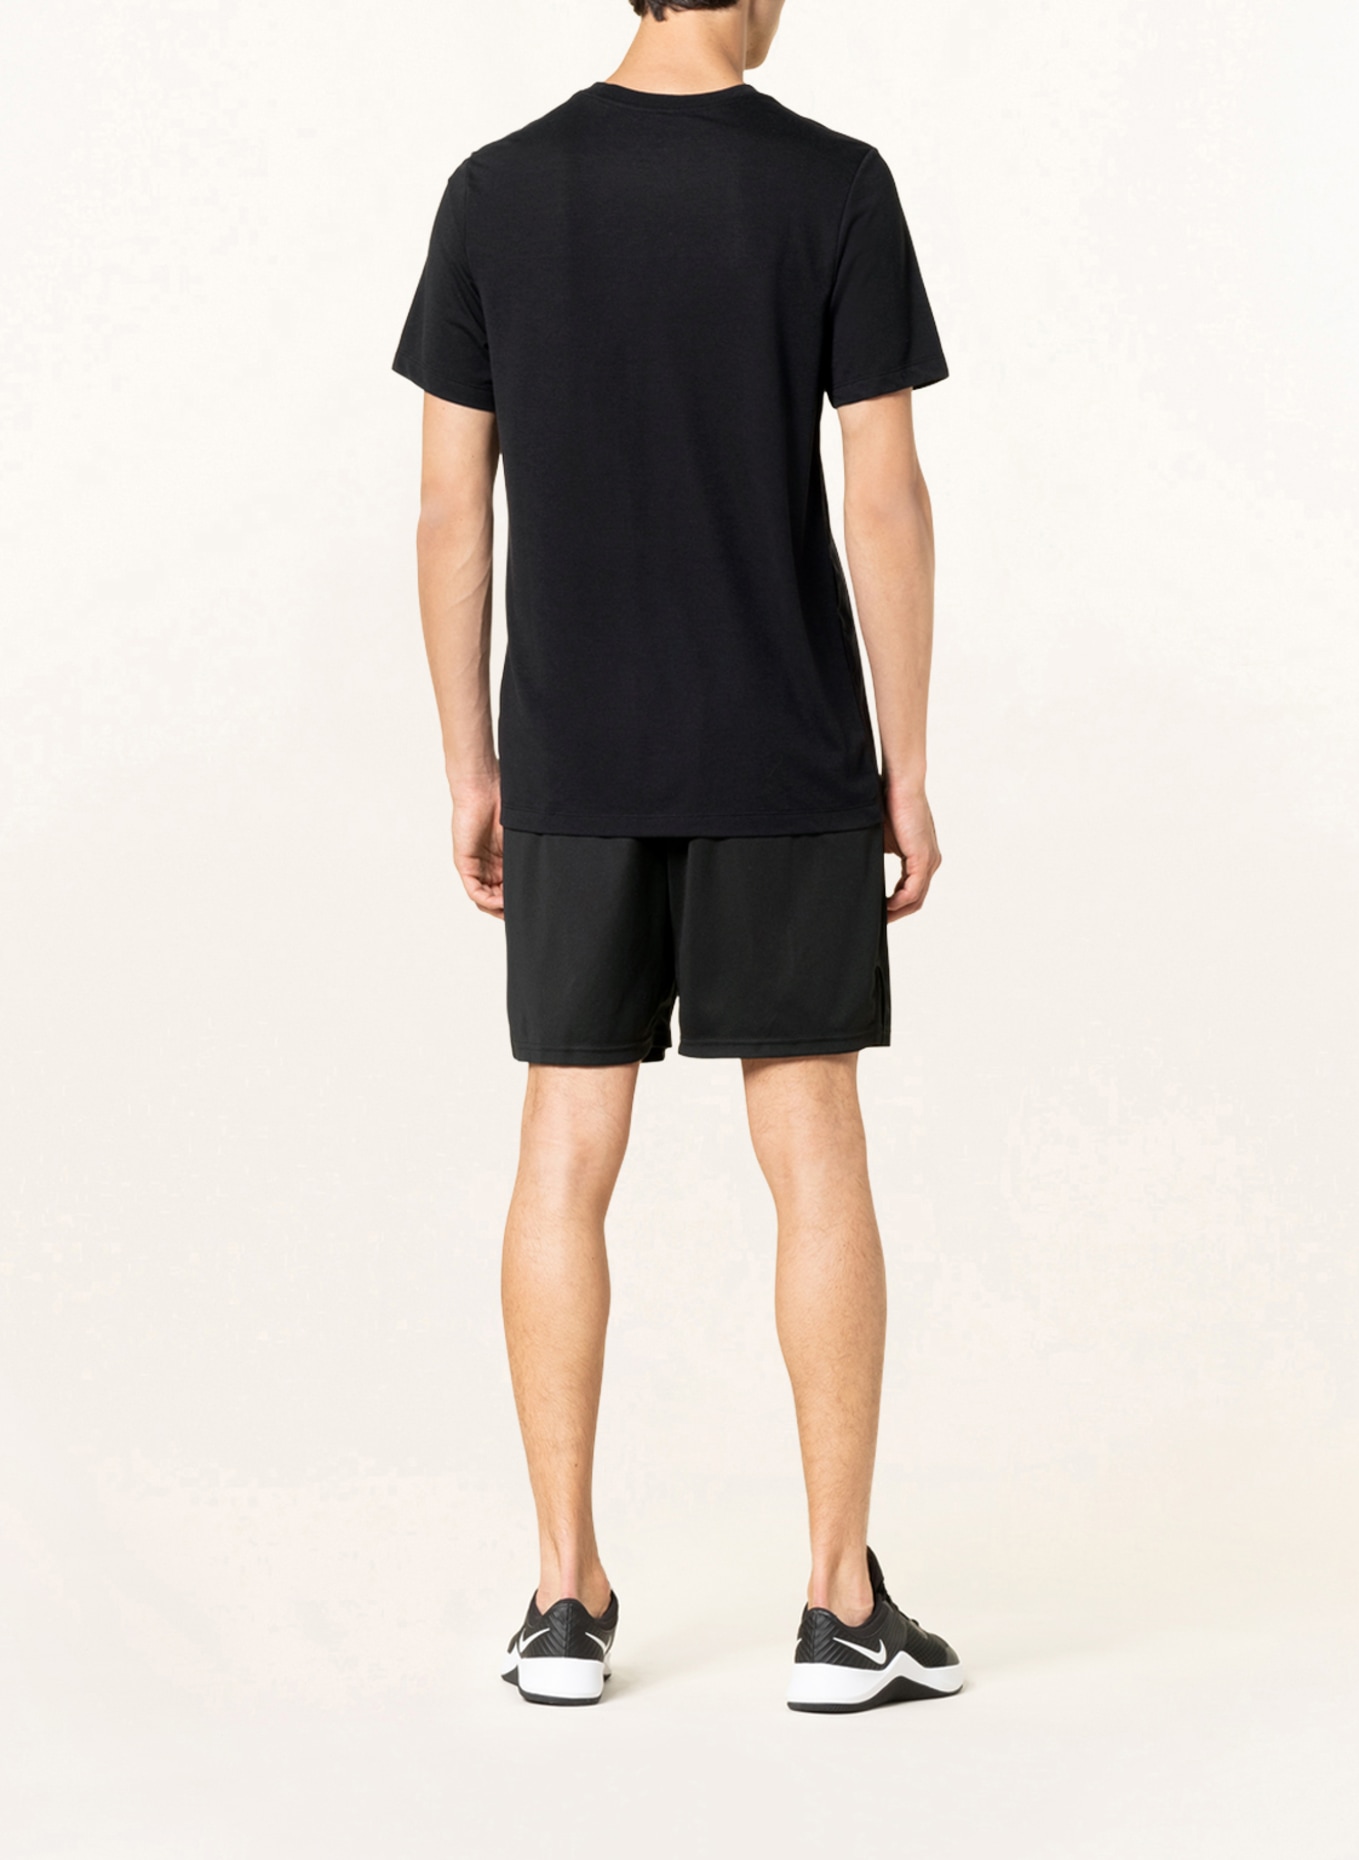 Nike T-shirt PRO DRI-FIT, Color: BLACK (Image 3)